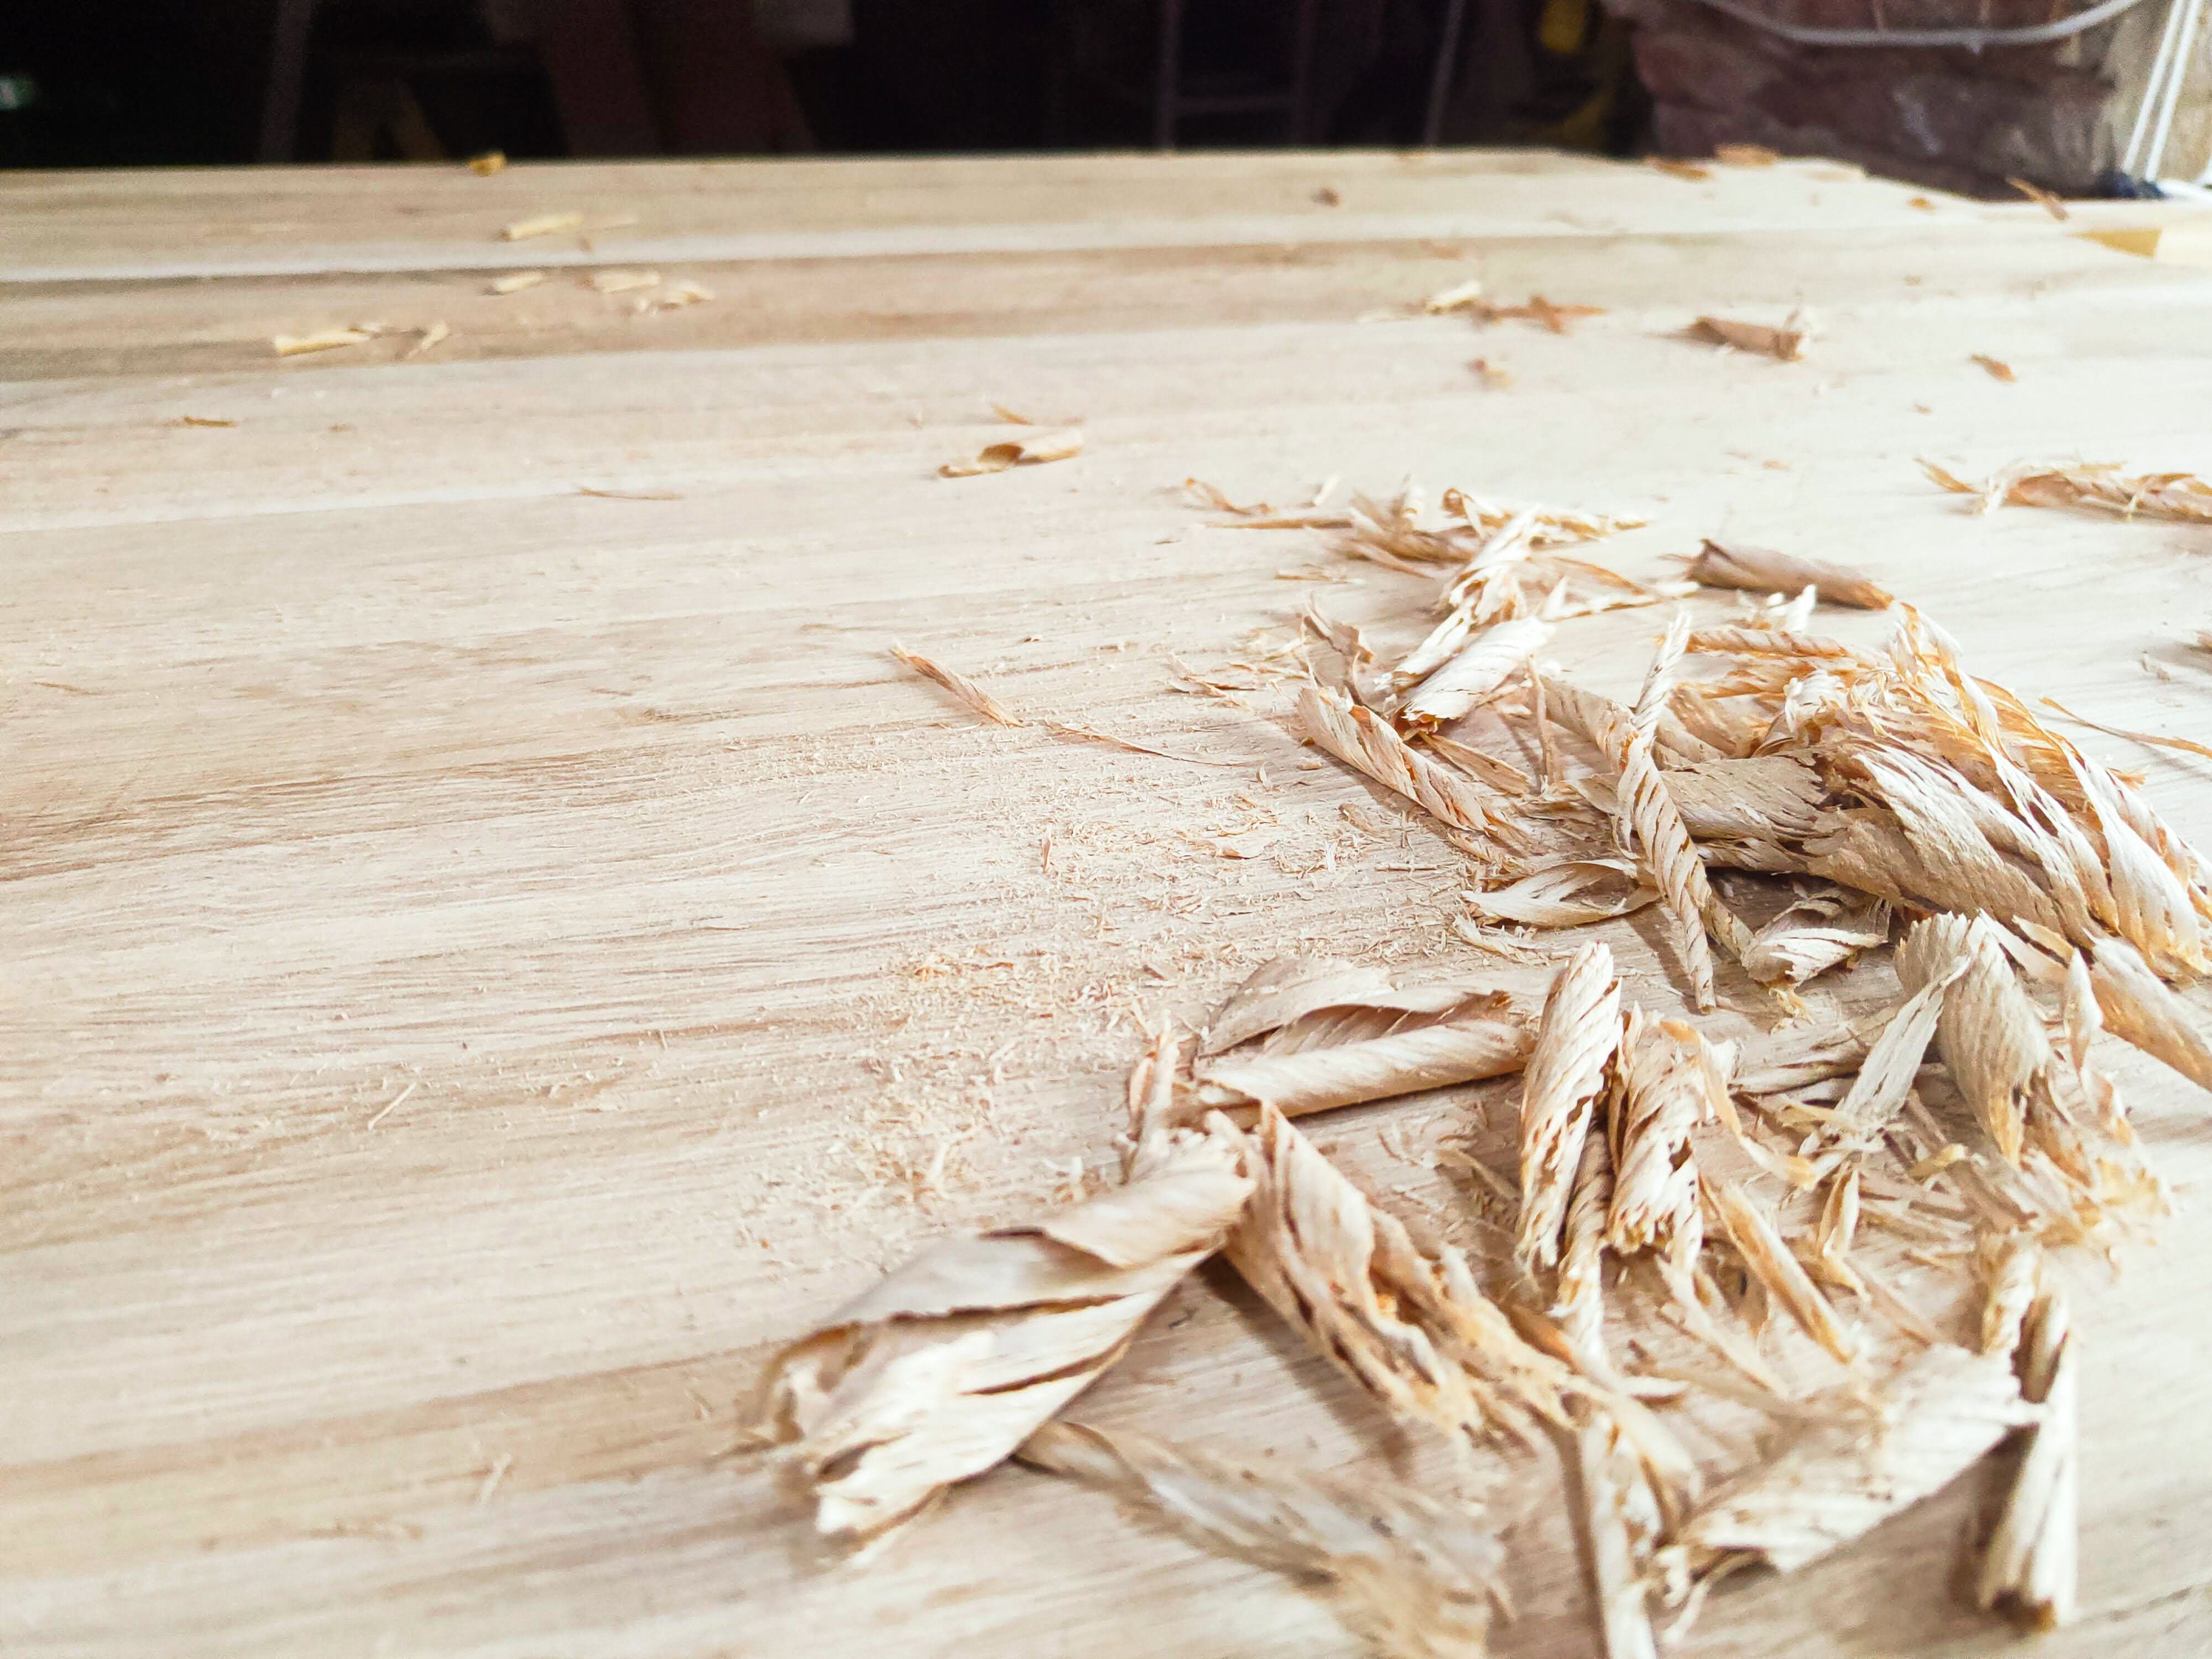 Tablero mesa madera maciza reciclada 60 cm - Tienda online